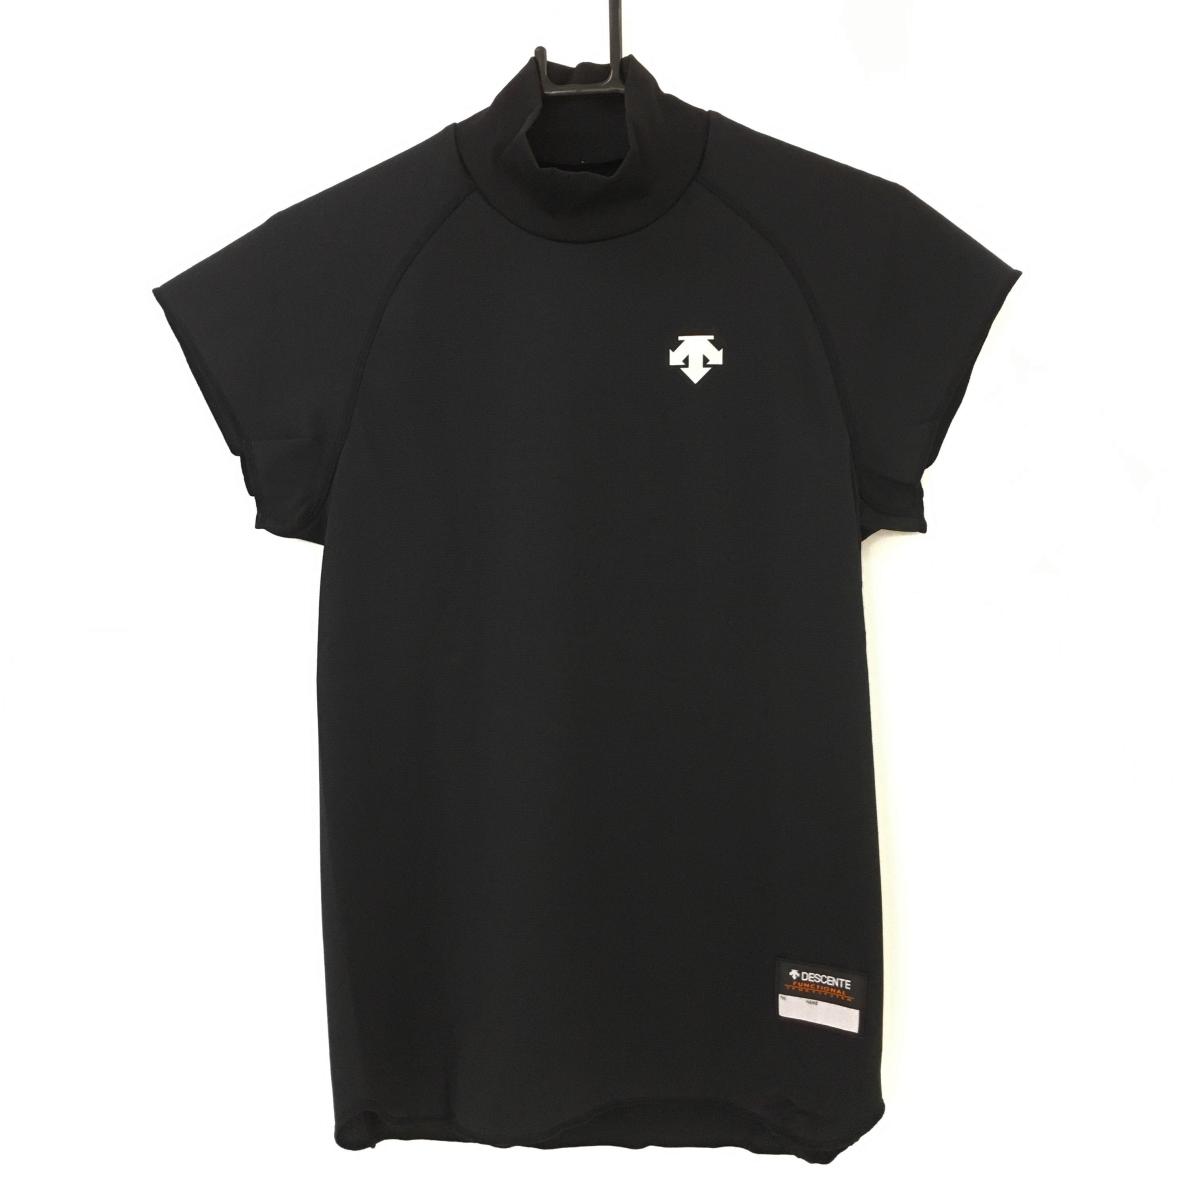 【新品】デサント 半袖ハイネックシャツ 黒 UVカット 3次元吸汗拡散素材 透け防止生地 メンズ M ゴルフウェア DESCENTE